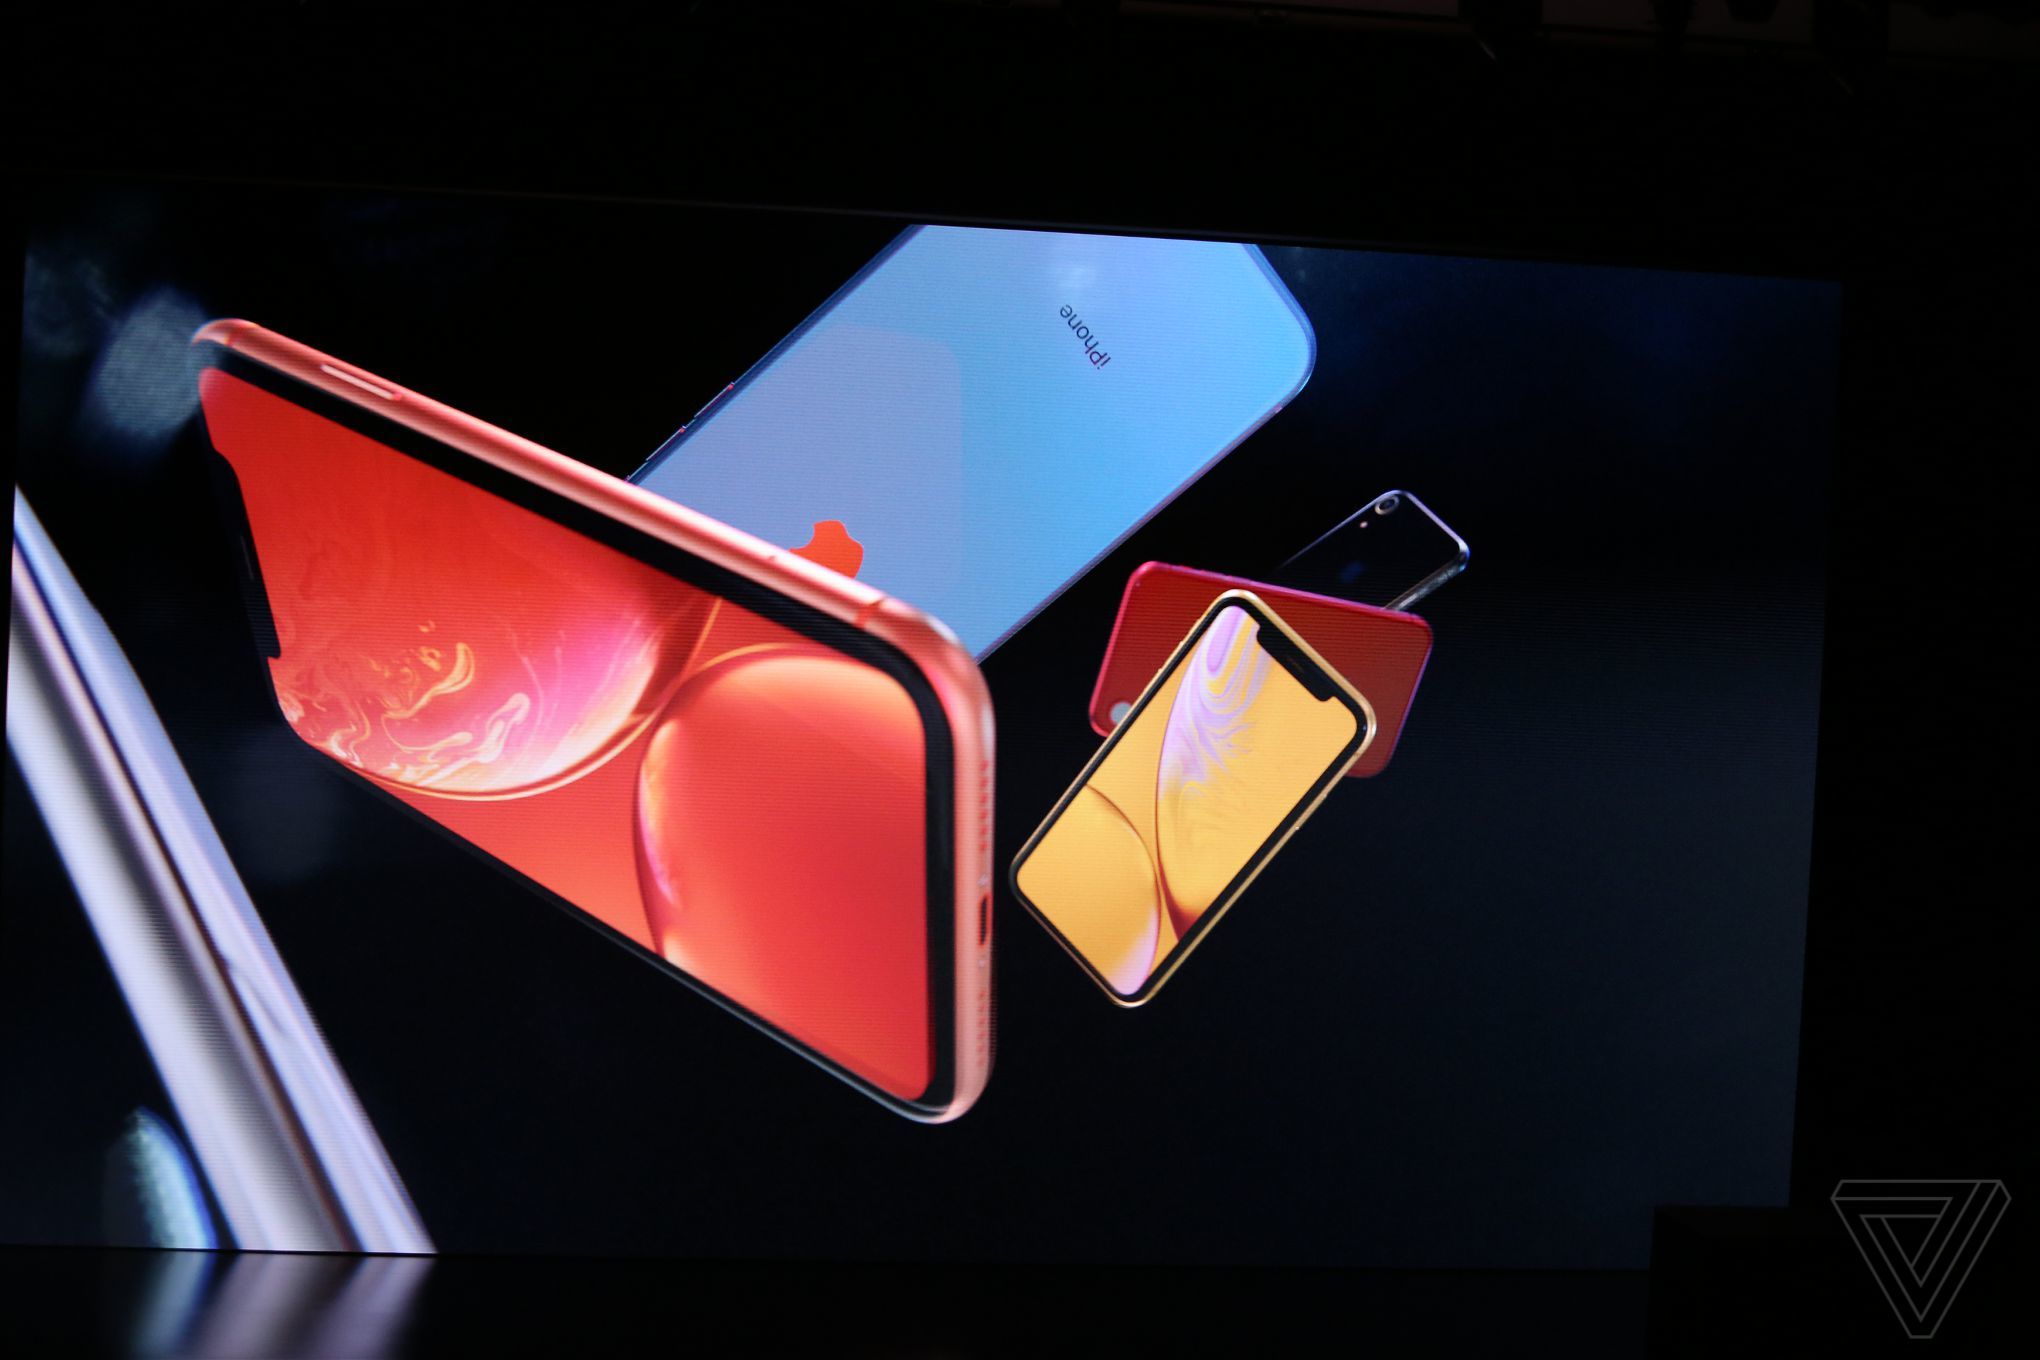 Bemutatkozott az iPhone XR - ismét van színes iPhone! 